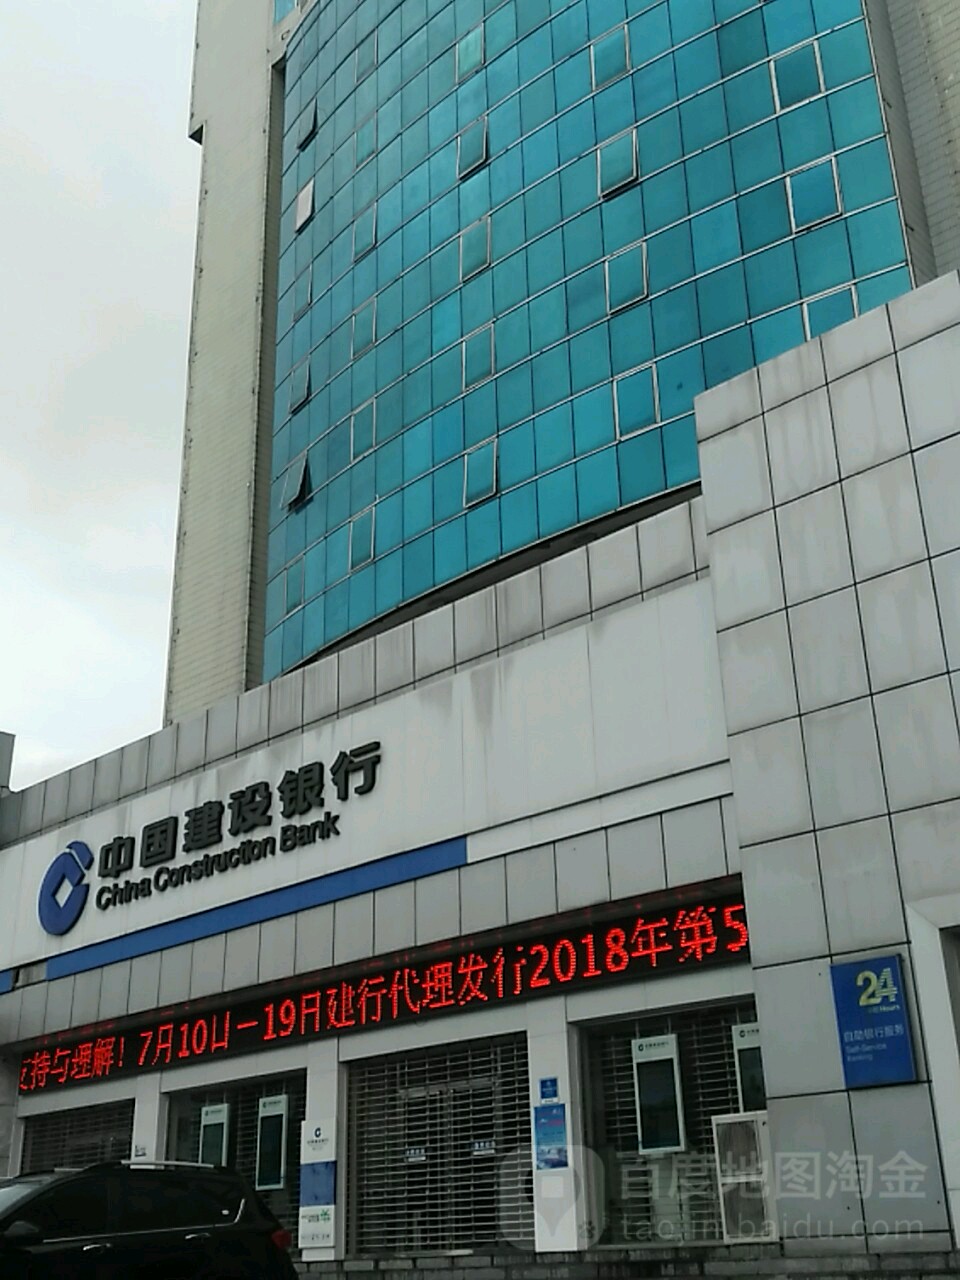 中国建设银行24小时自助银行深(兴安支行)